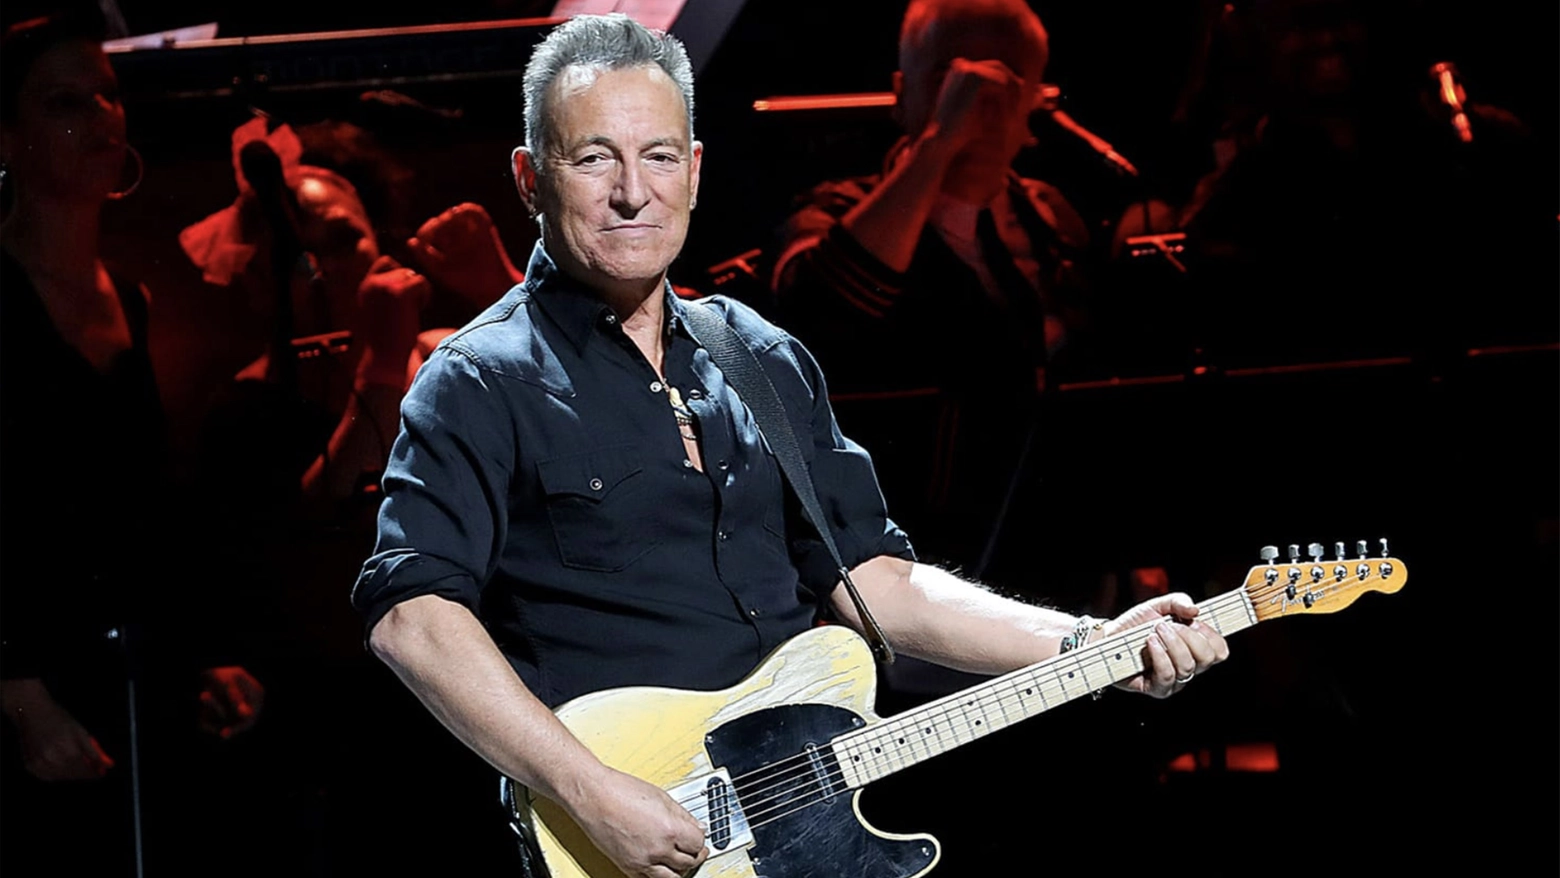 Aspettando Bruce Springsteen, Ferrara prepara 13 eventi musicali e culturali per omaggiare il musicista americano in attesa del concerto del 18 maggio